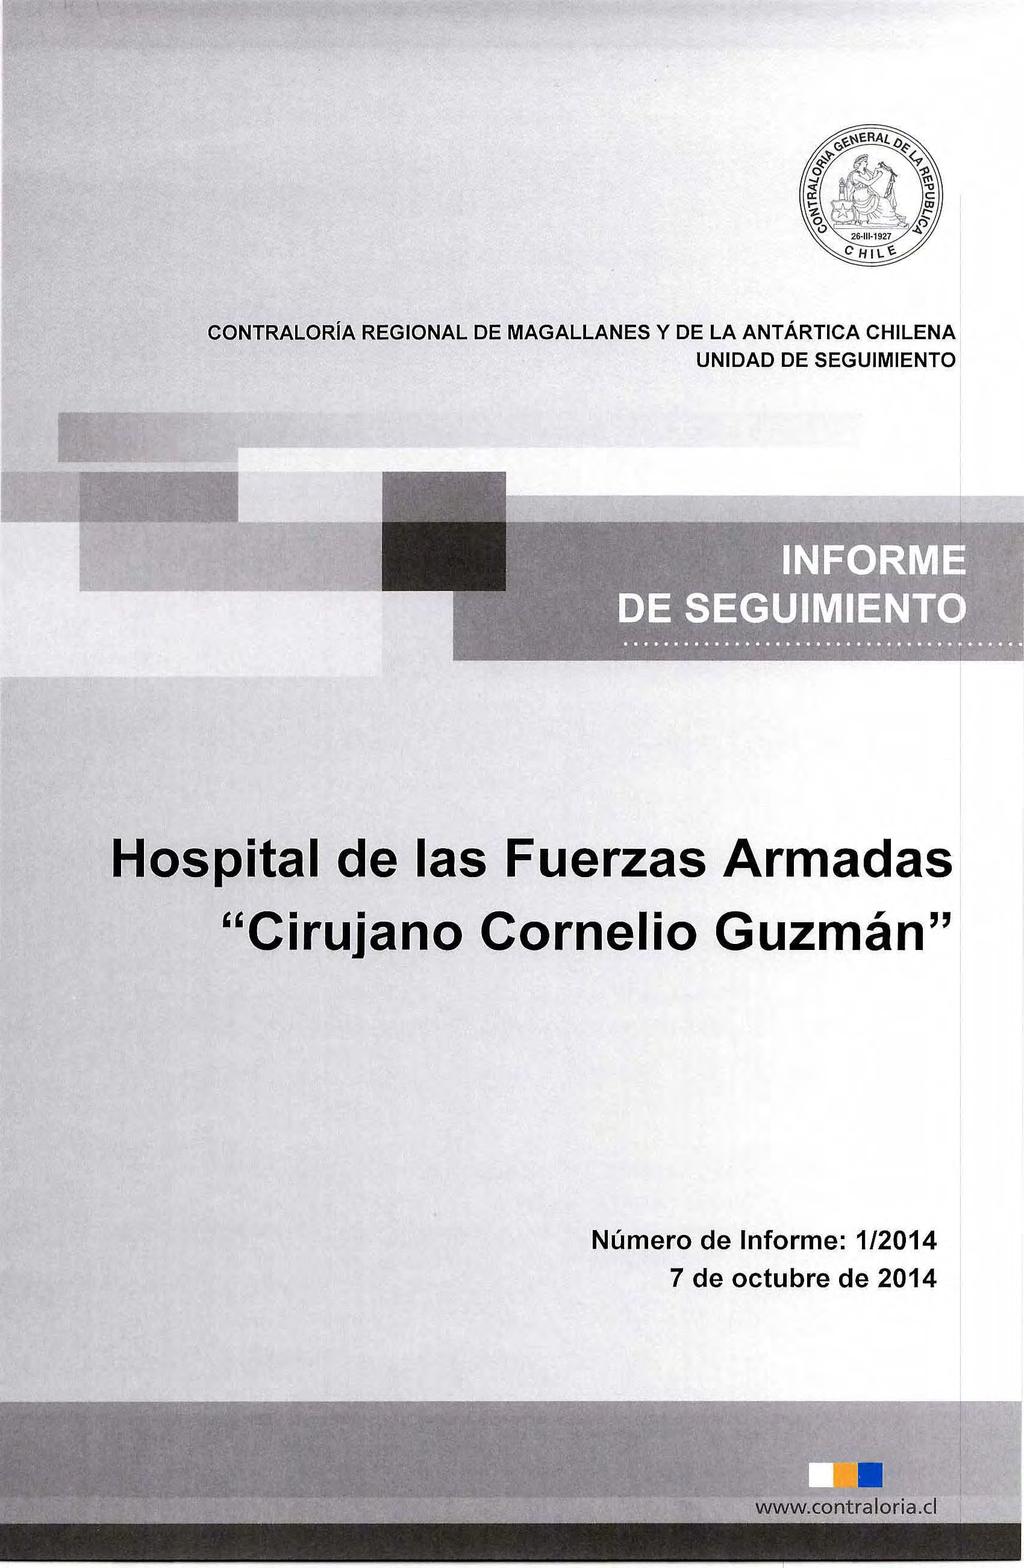 CONTRALORíA REGIONAL DE MAGALLANES y DE LA ANTÁRTICA CHILENA UNIDAD DE SEGUIMIENTO Hospital de las